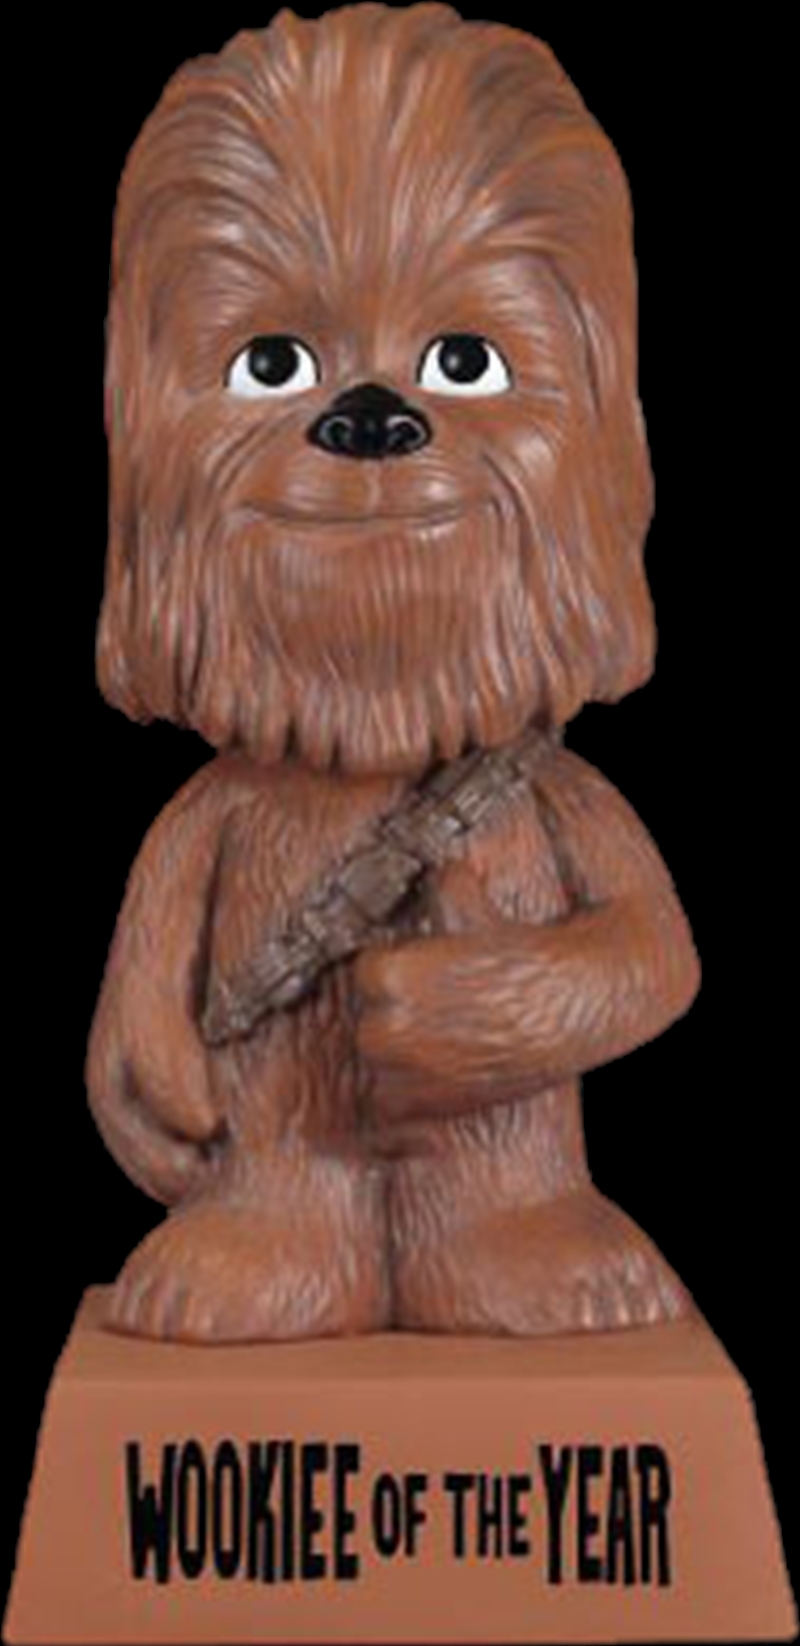 Star Wars - "Wookiee of the Year" Wisecracks Vinyl Figure/Product Detail/Figurines